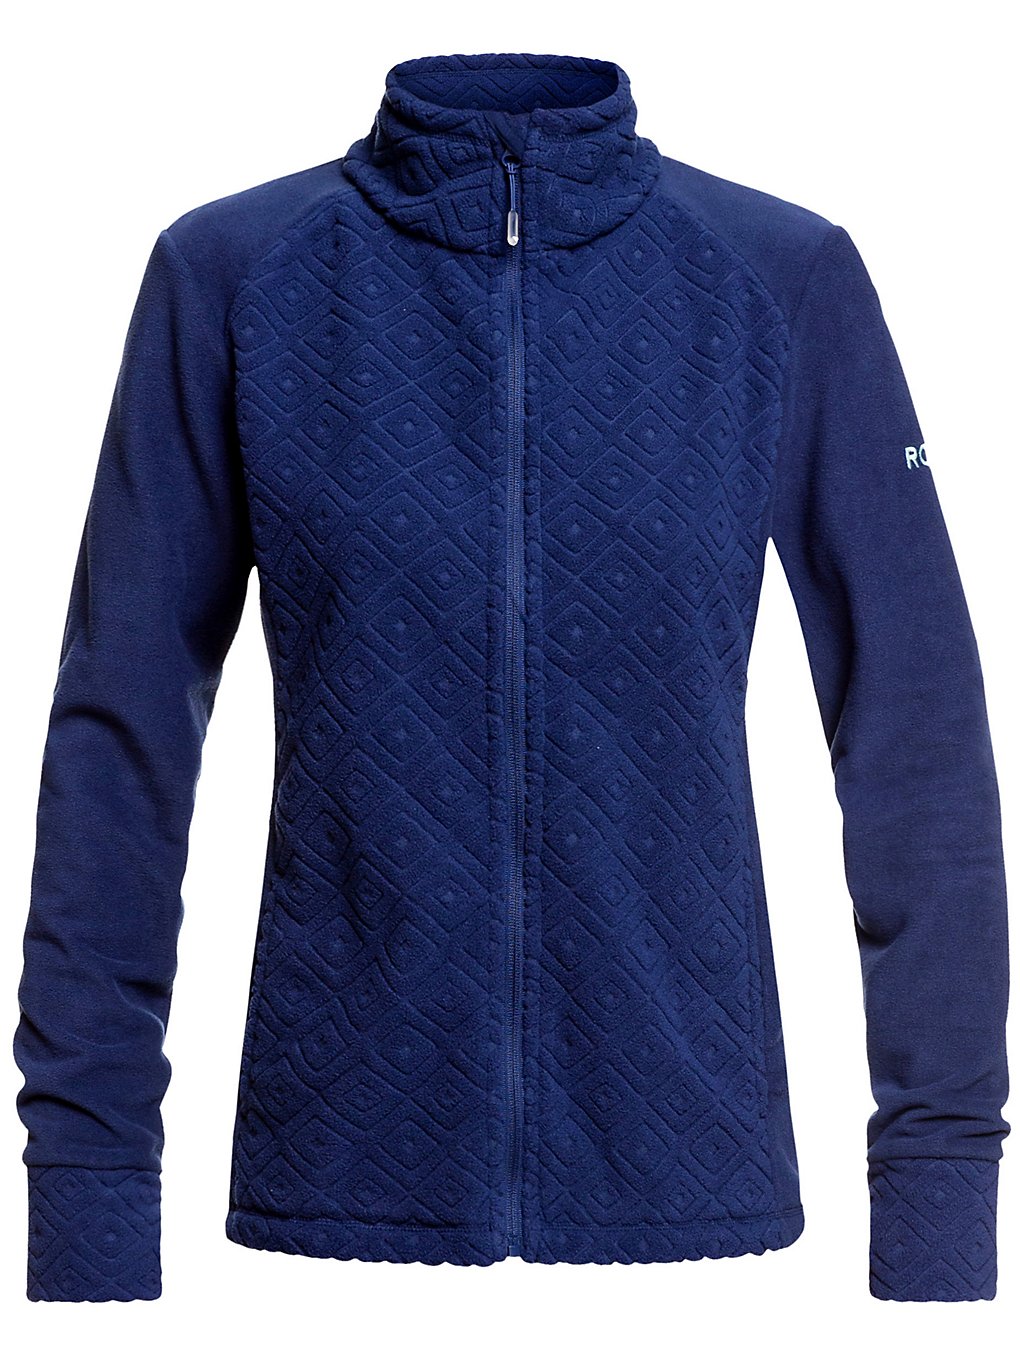 Roxy surface zip through fleece jacket sininen, roxy